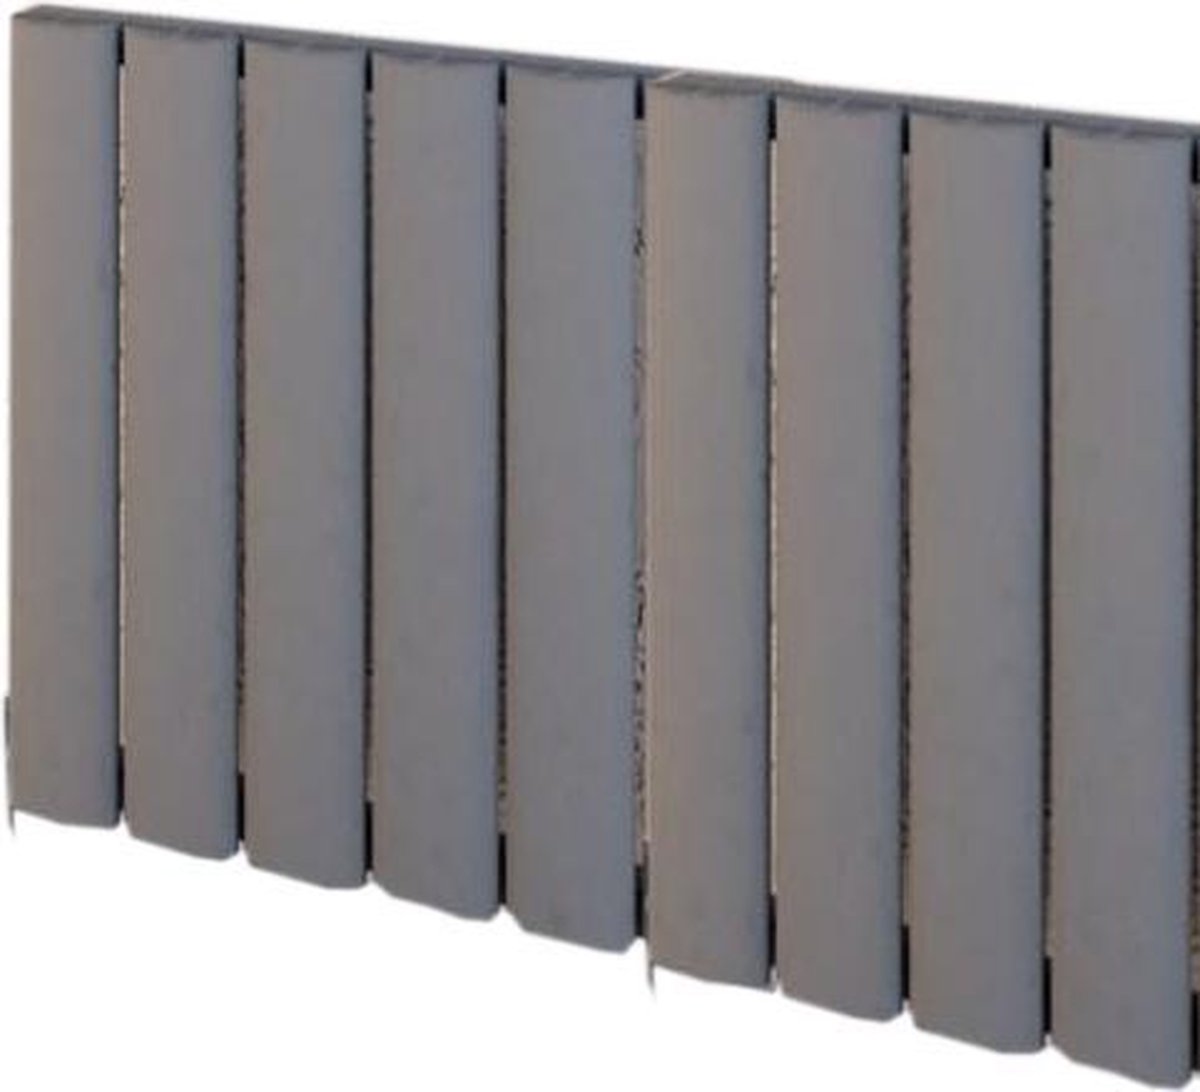 Design radiator horizontaal aluminium mat grijs 60x85cm949 watt- Eastbrook Malmesbury